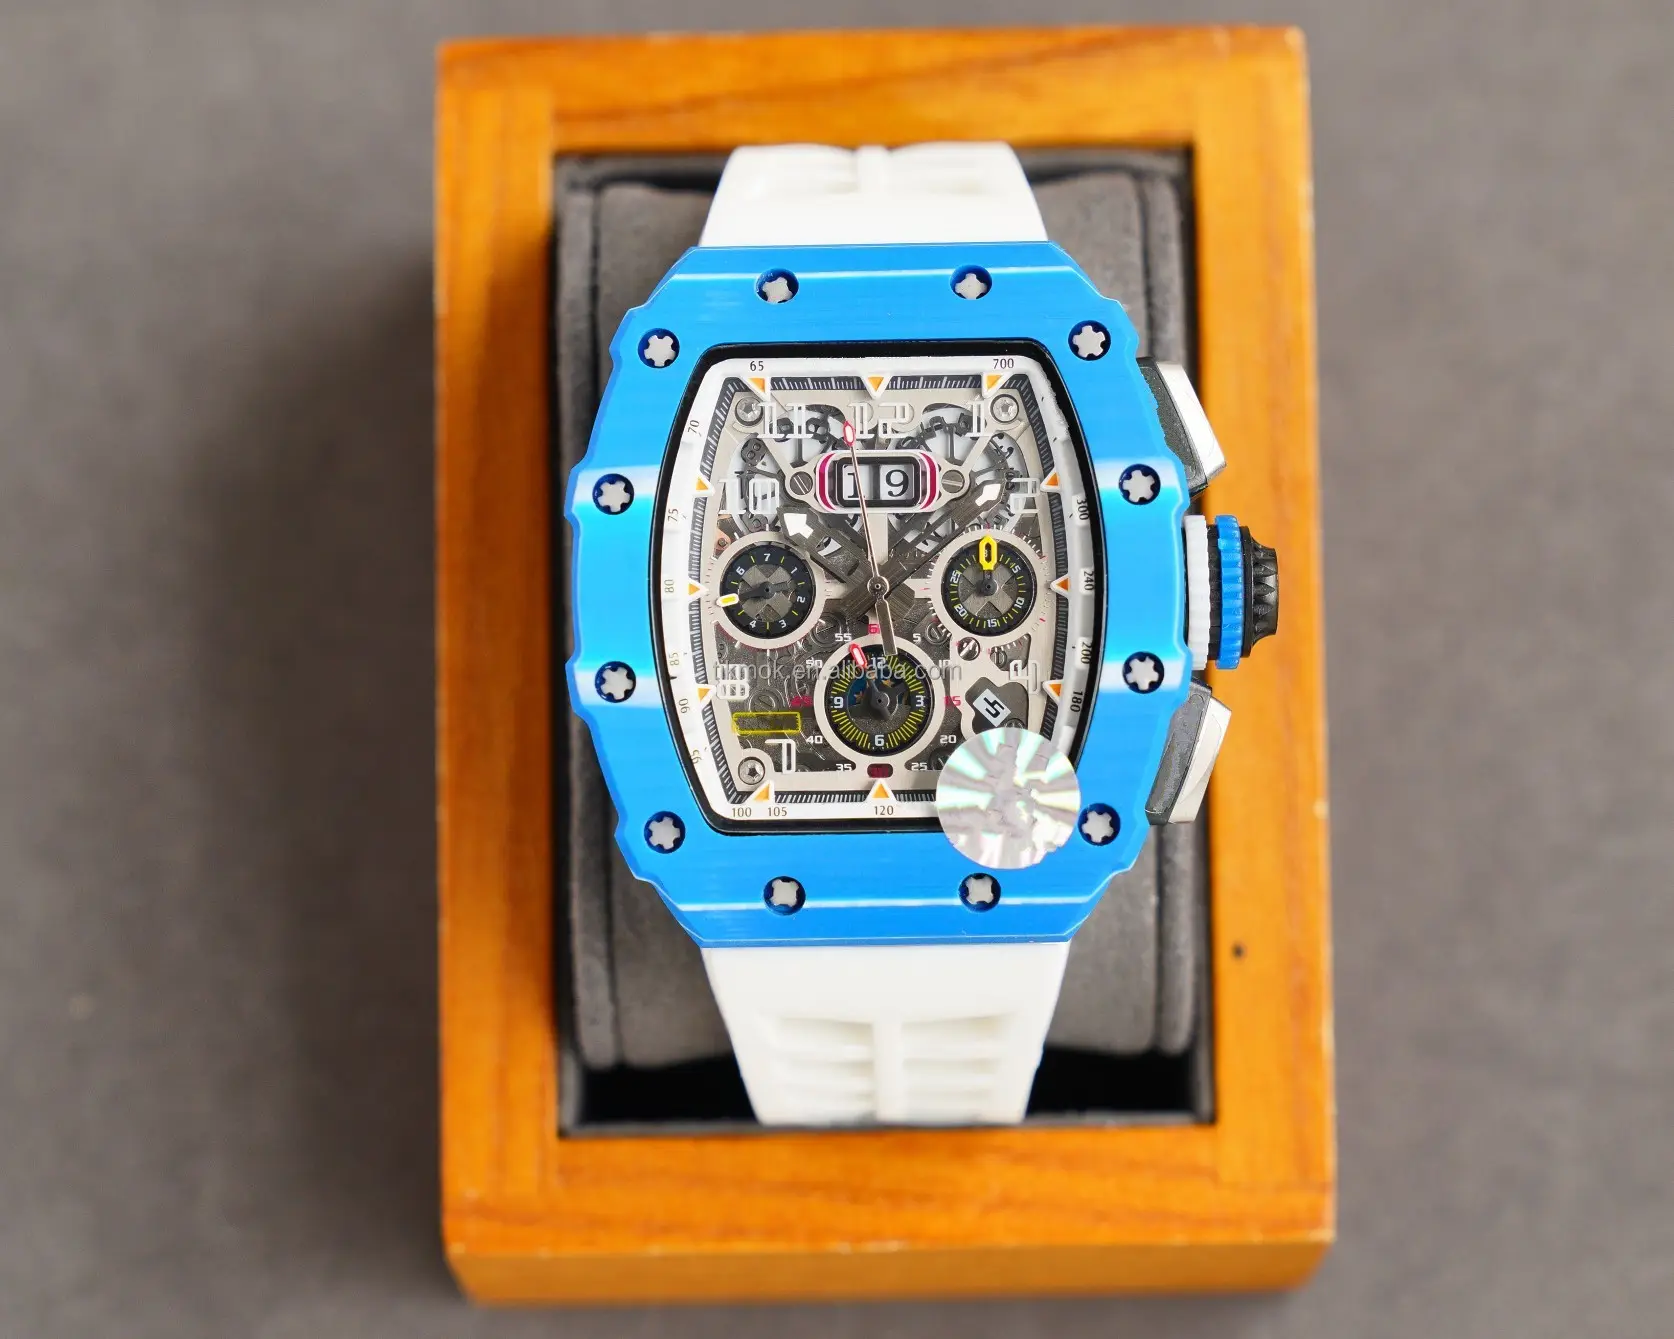 นาฬิกาข้อมือผู้ชาย8สีทำจากคาร์บอนไฟเบอร์กันน้ำ, นาฬิกากลไกจักรกลสำหรับดำน้ำระบบอัตโนมัติมี3ATM 49มม. มีปฏิทิน